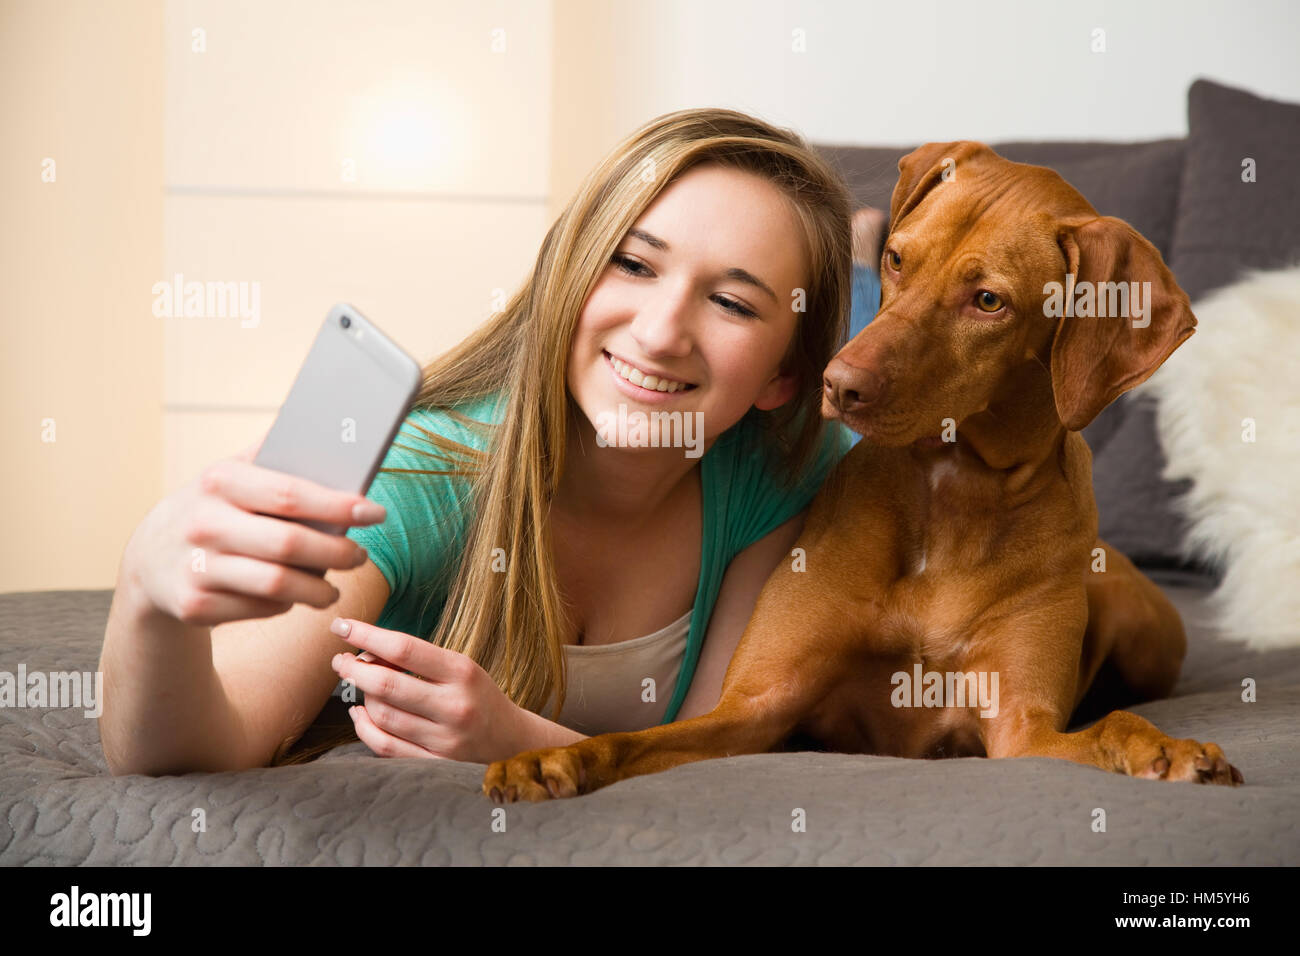 Teenager-Mädchen (16-17) auf Bett liegend mit brauner Vizsla Hund und nehmen selfie Stockfoto